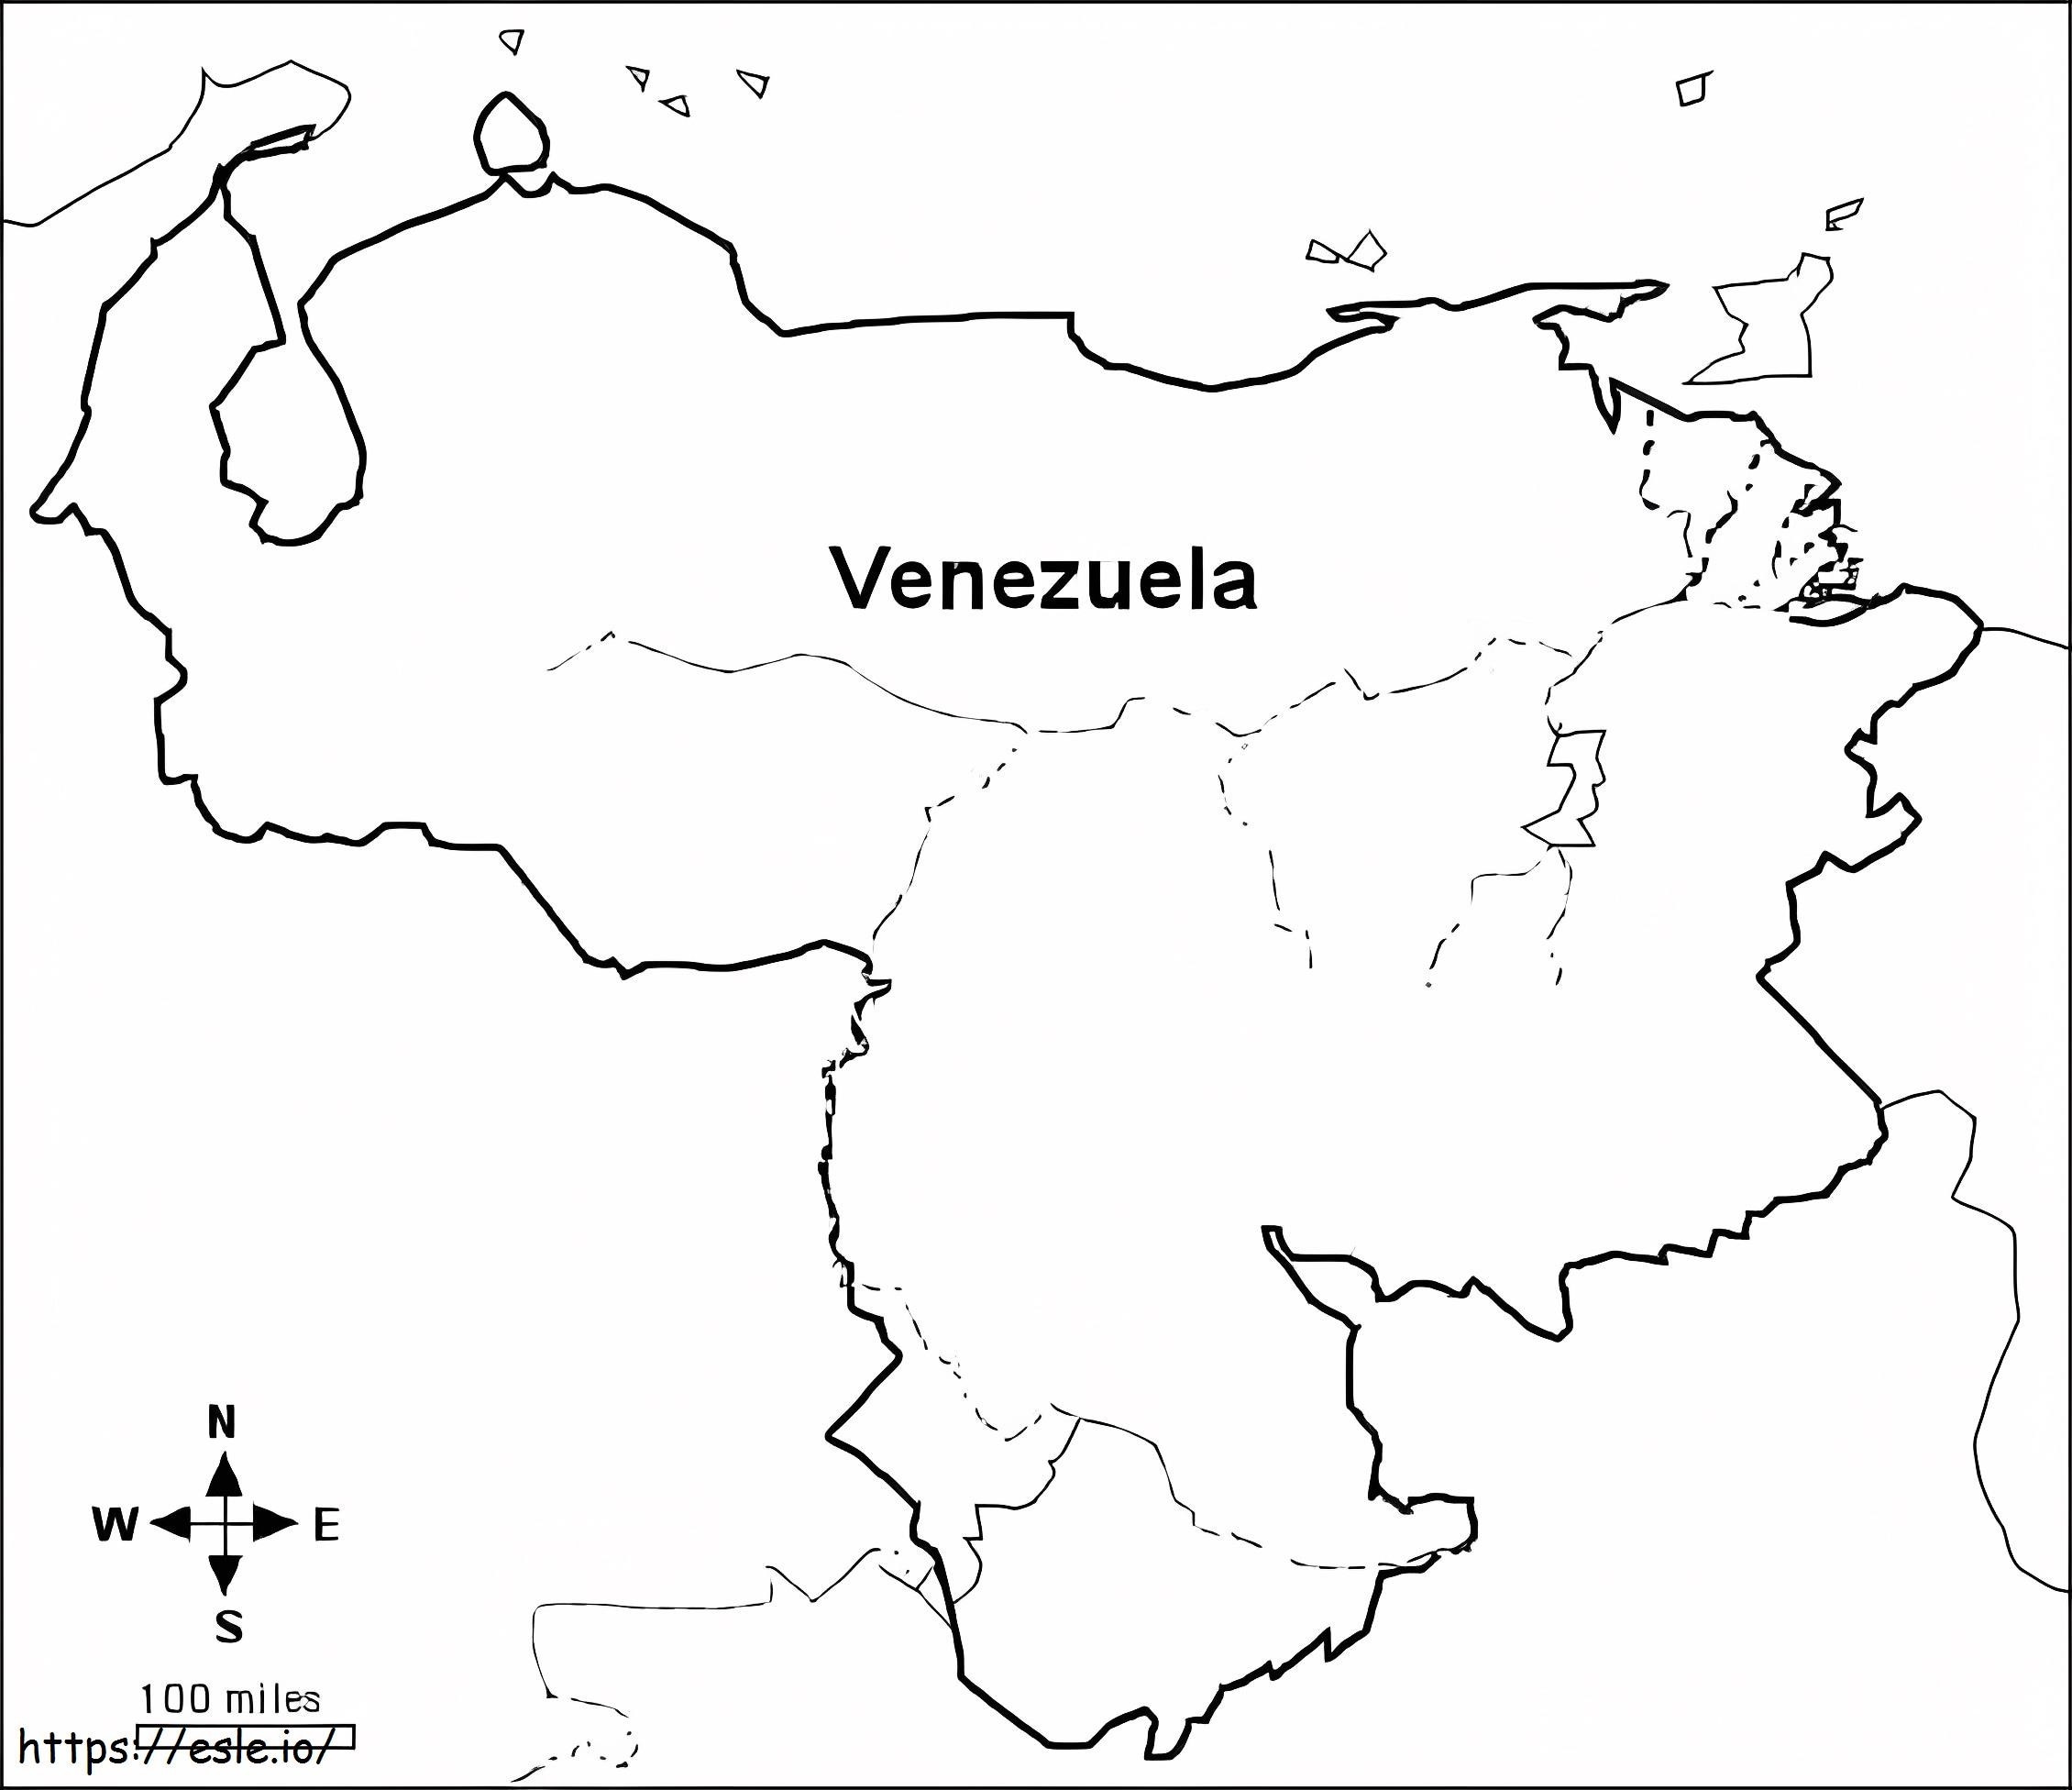 Boyama İçin Ücretsiz Yazdırılabilir HD Venezuela Haritası boyama